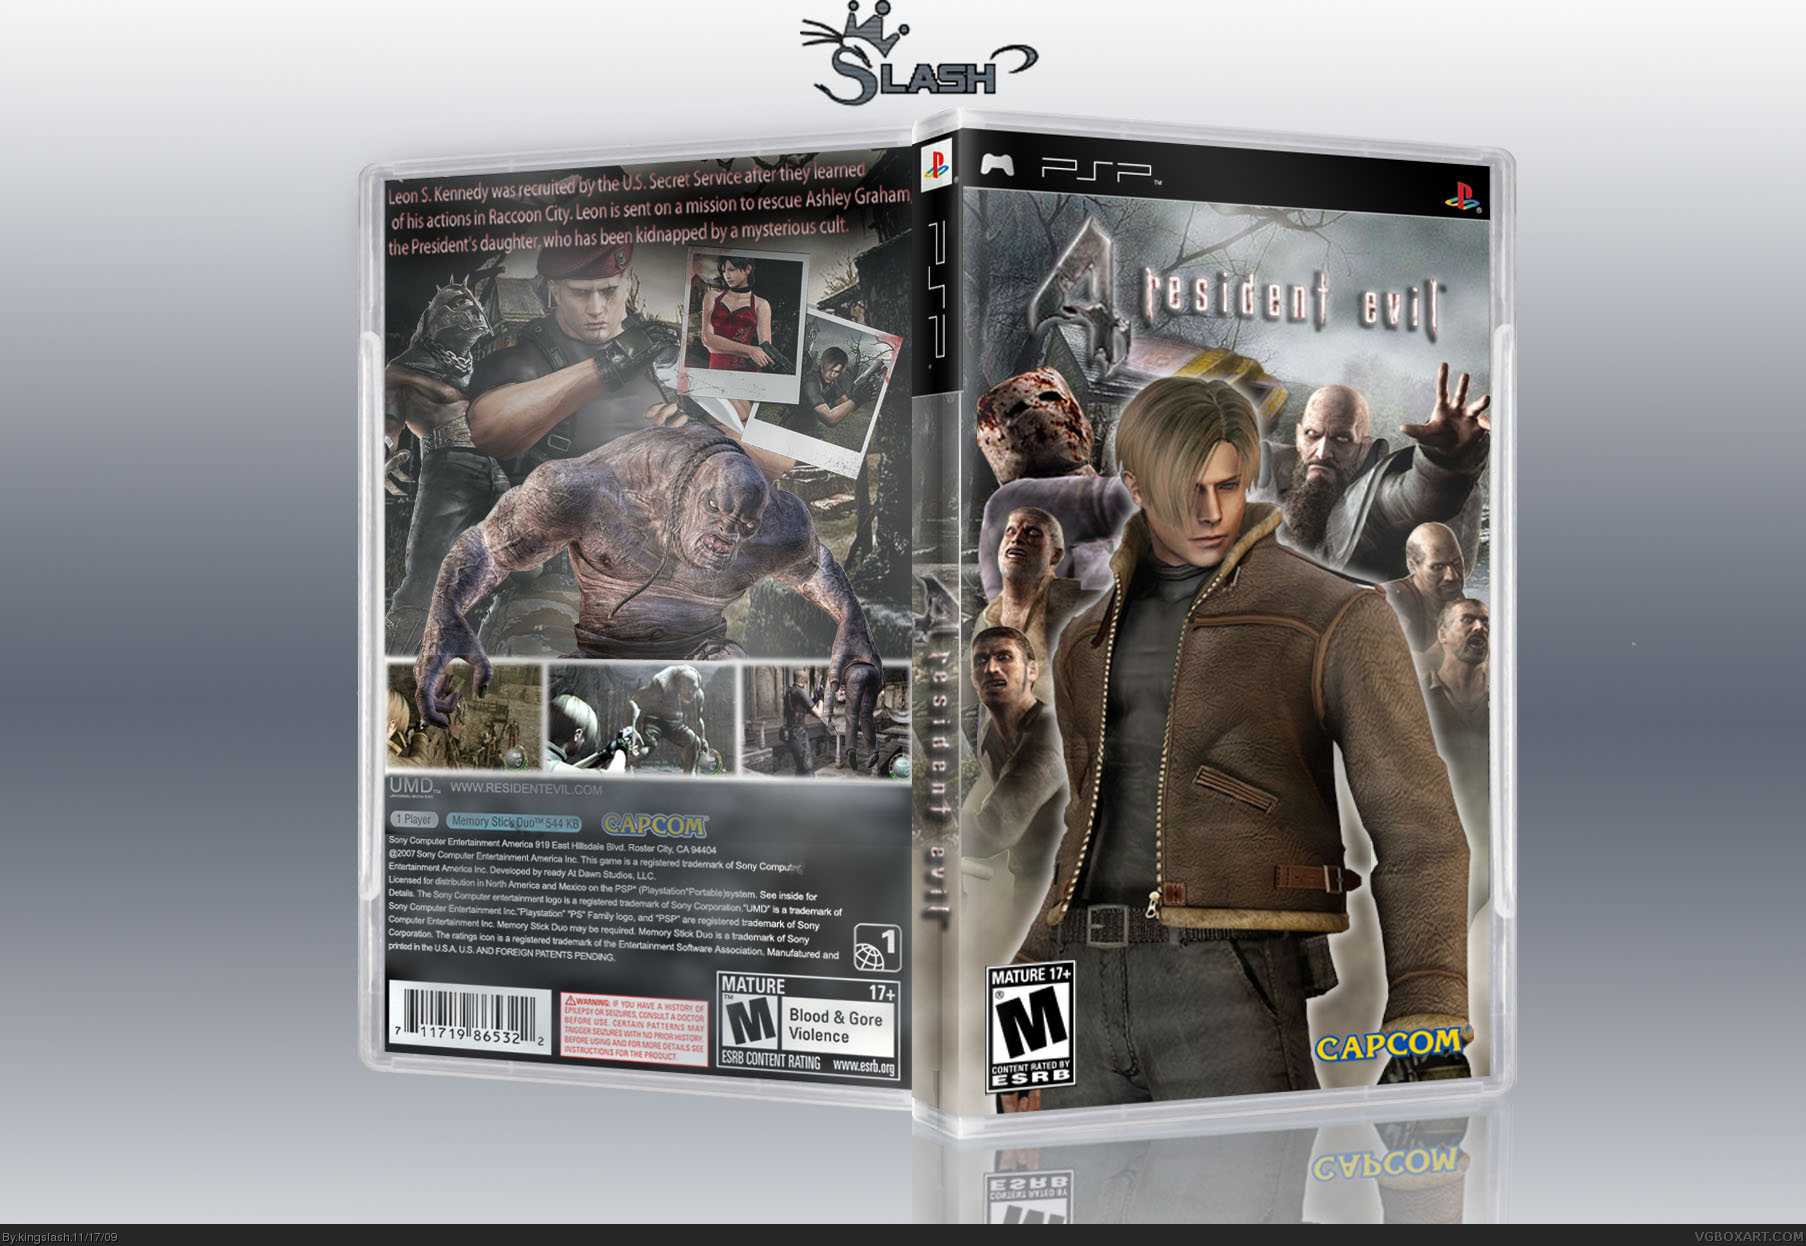 Resident Evil 4: PSP Edition box cover